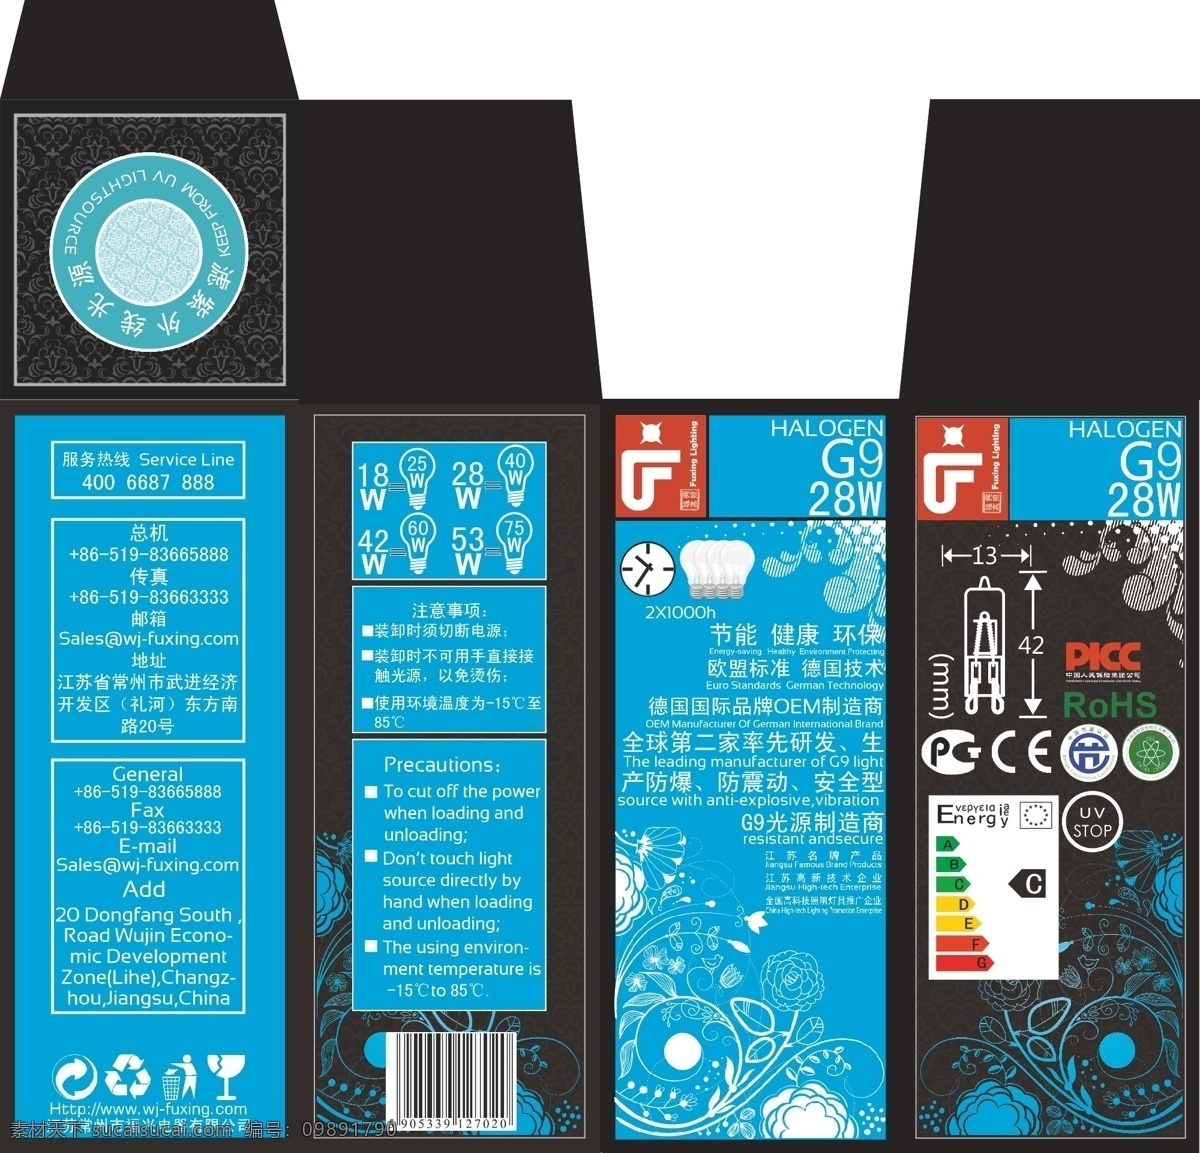 包装盒 g9 包装盒设计 黑色 蓝色 灯珠 灯具 包装设计 矢量